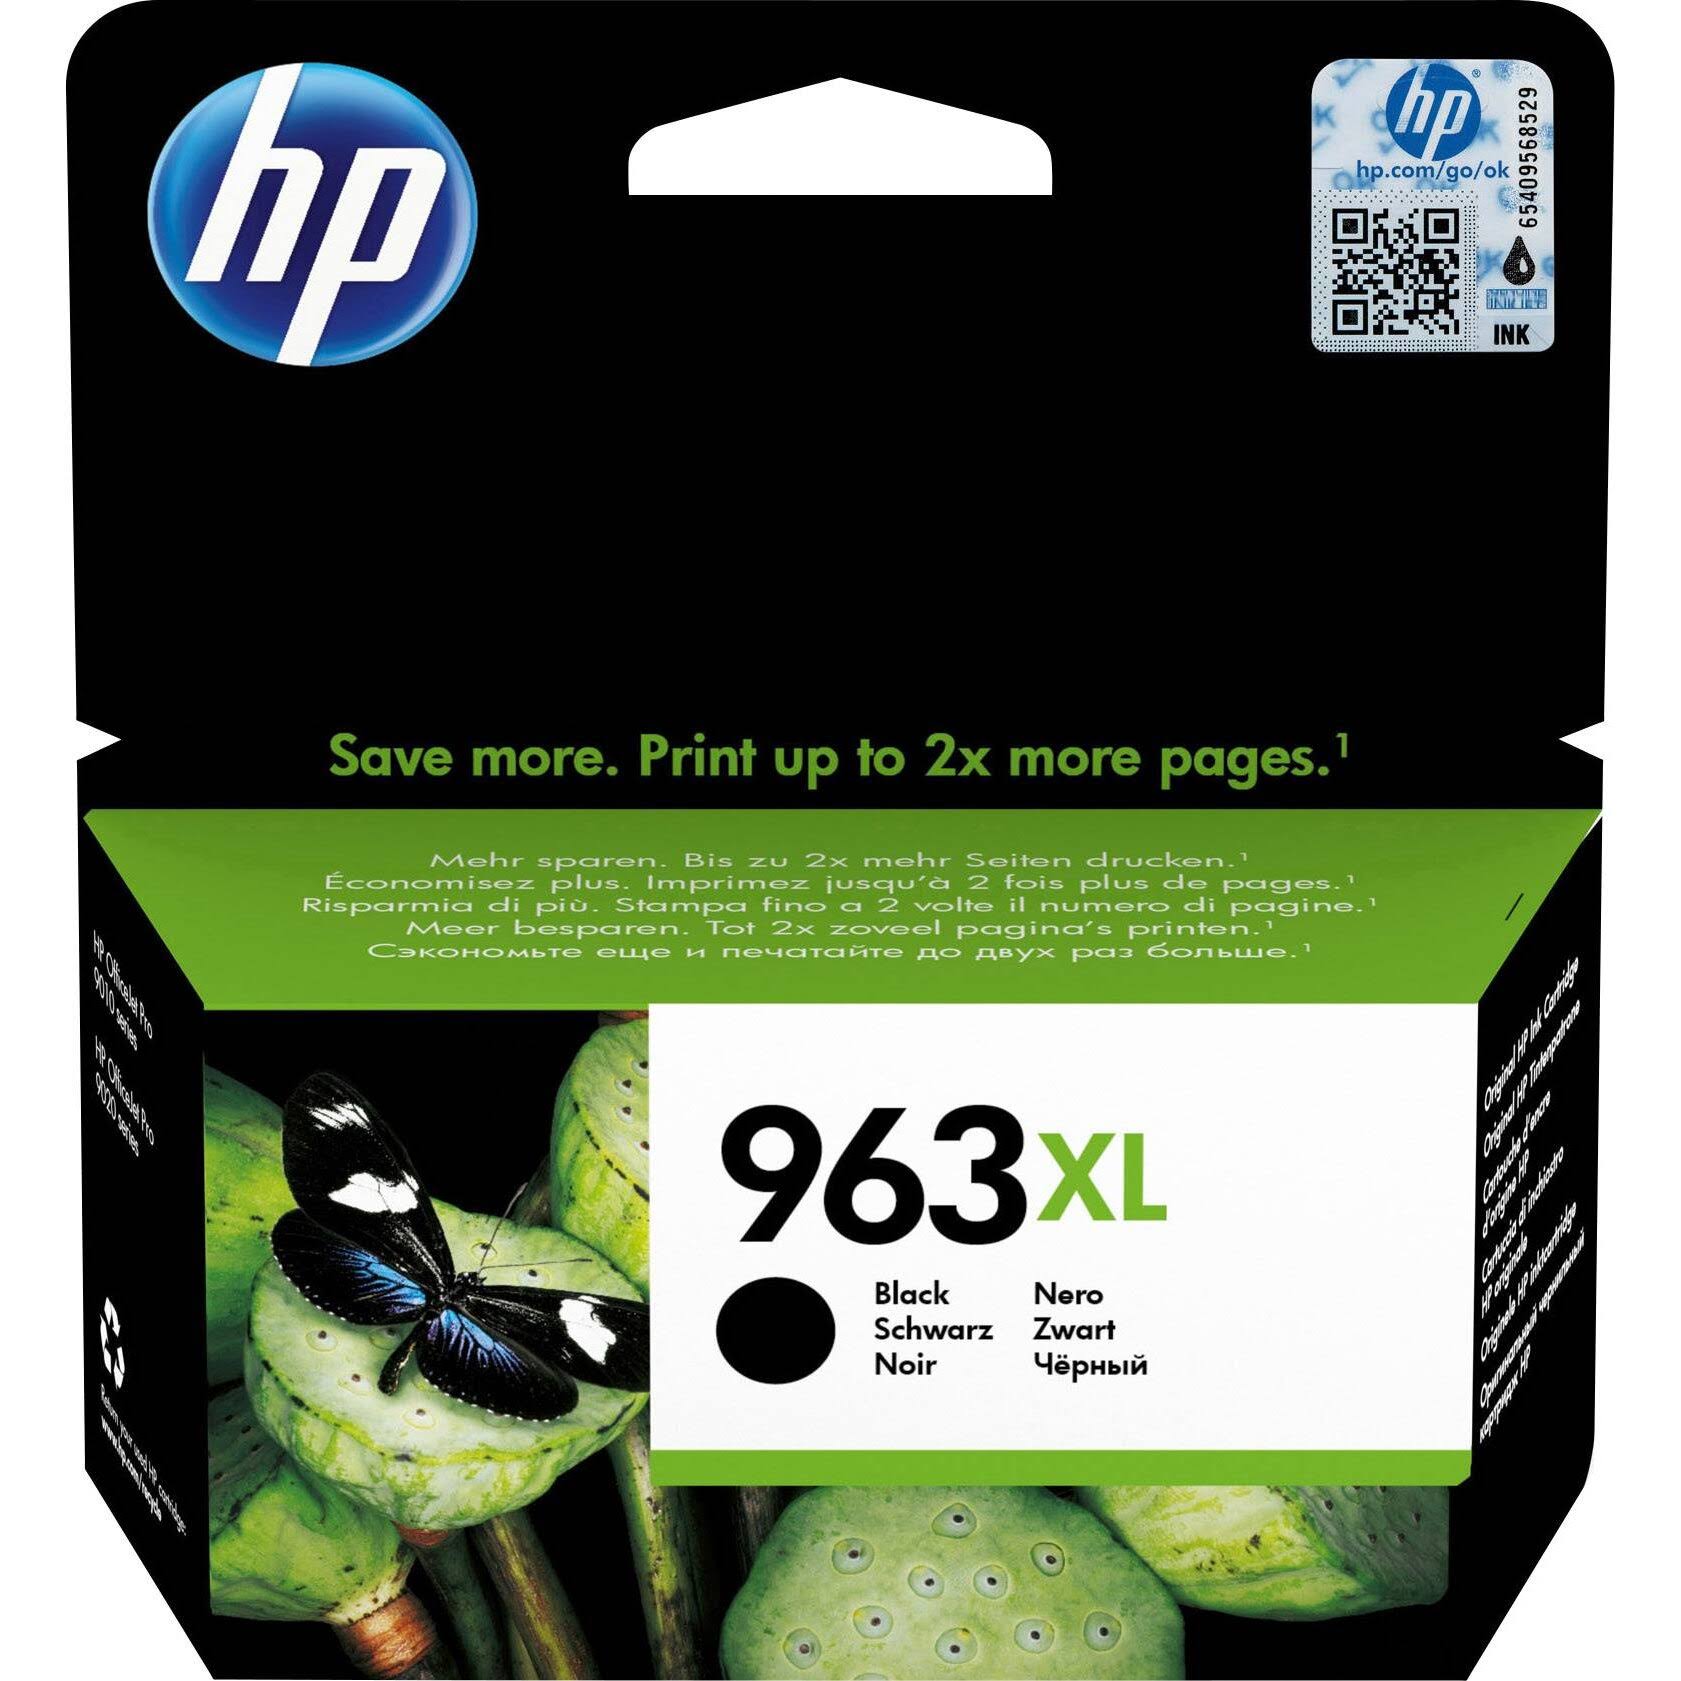 HP 963XL Black Ink Cartridge